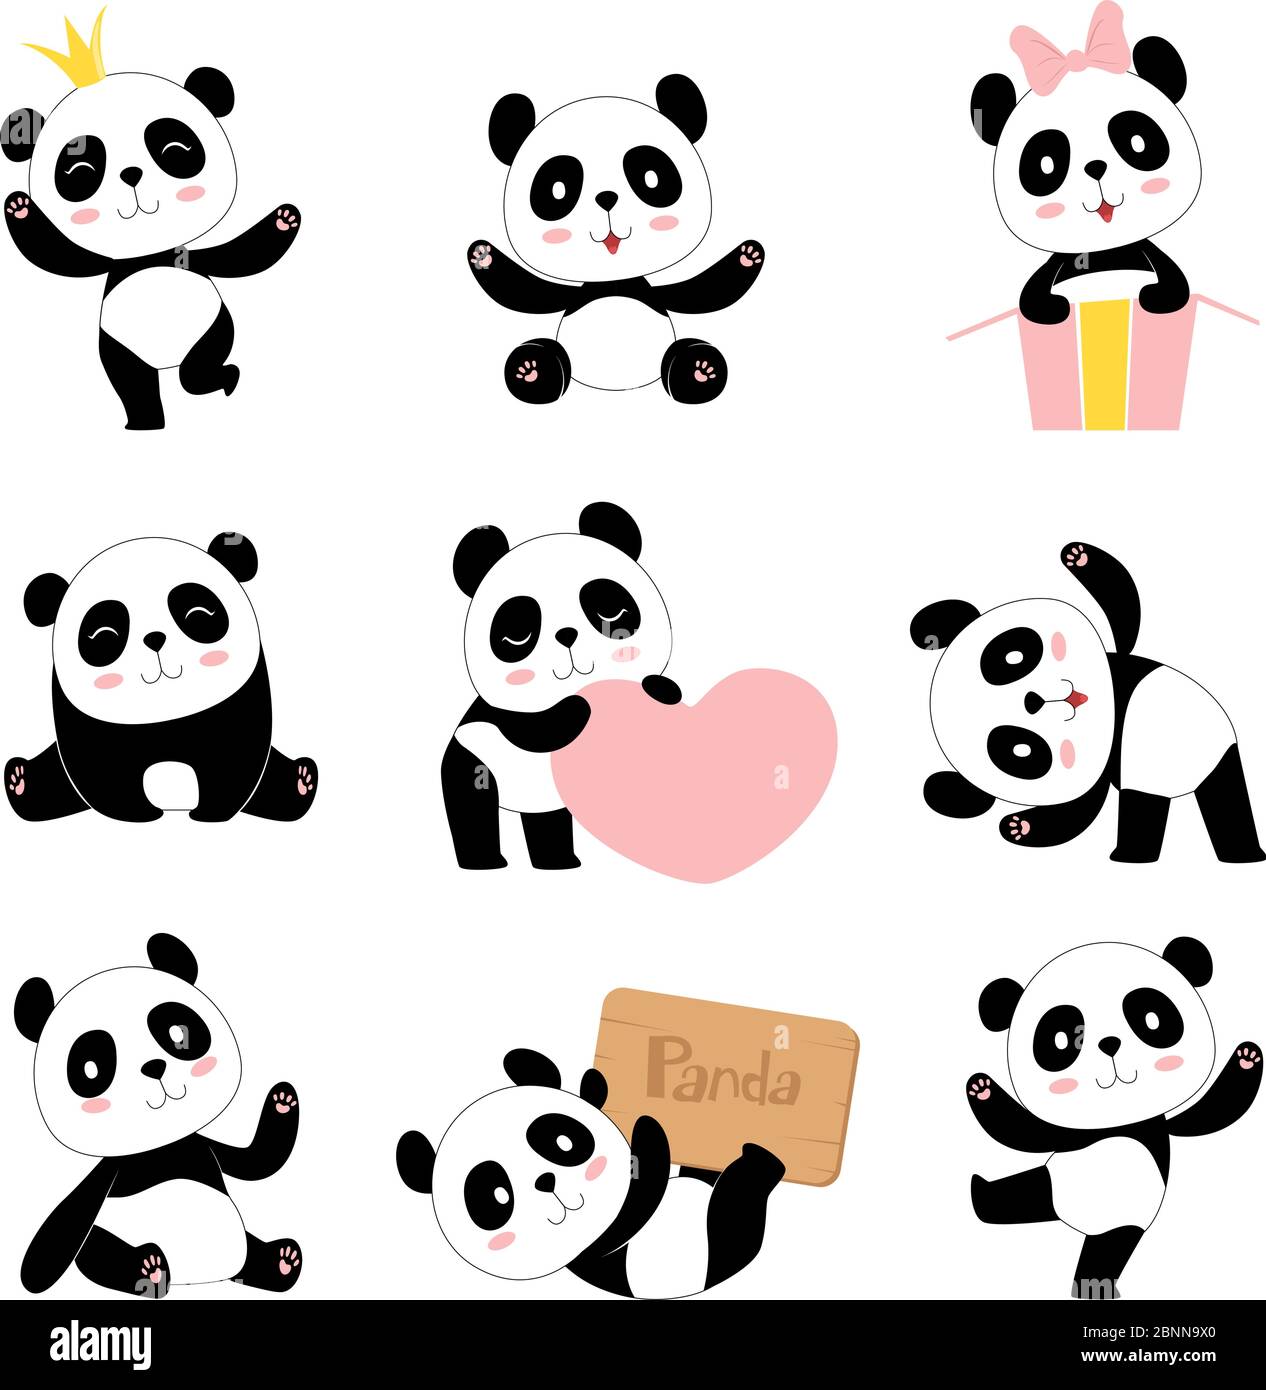 Pandas pour bébés. Jouets animaux symboles chinois panda ours adorable bébé mascotte vecteur collection de caractères dans le style de dessin animé Illustration de Vecteur